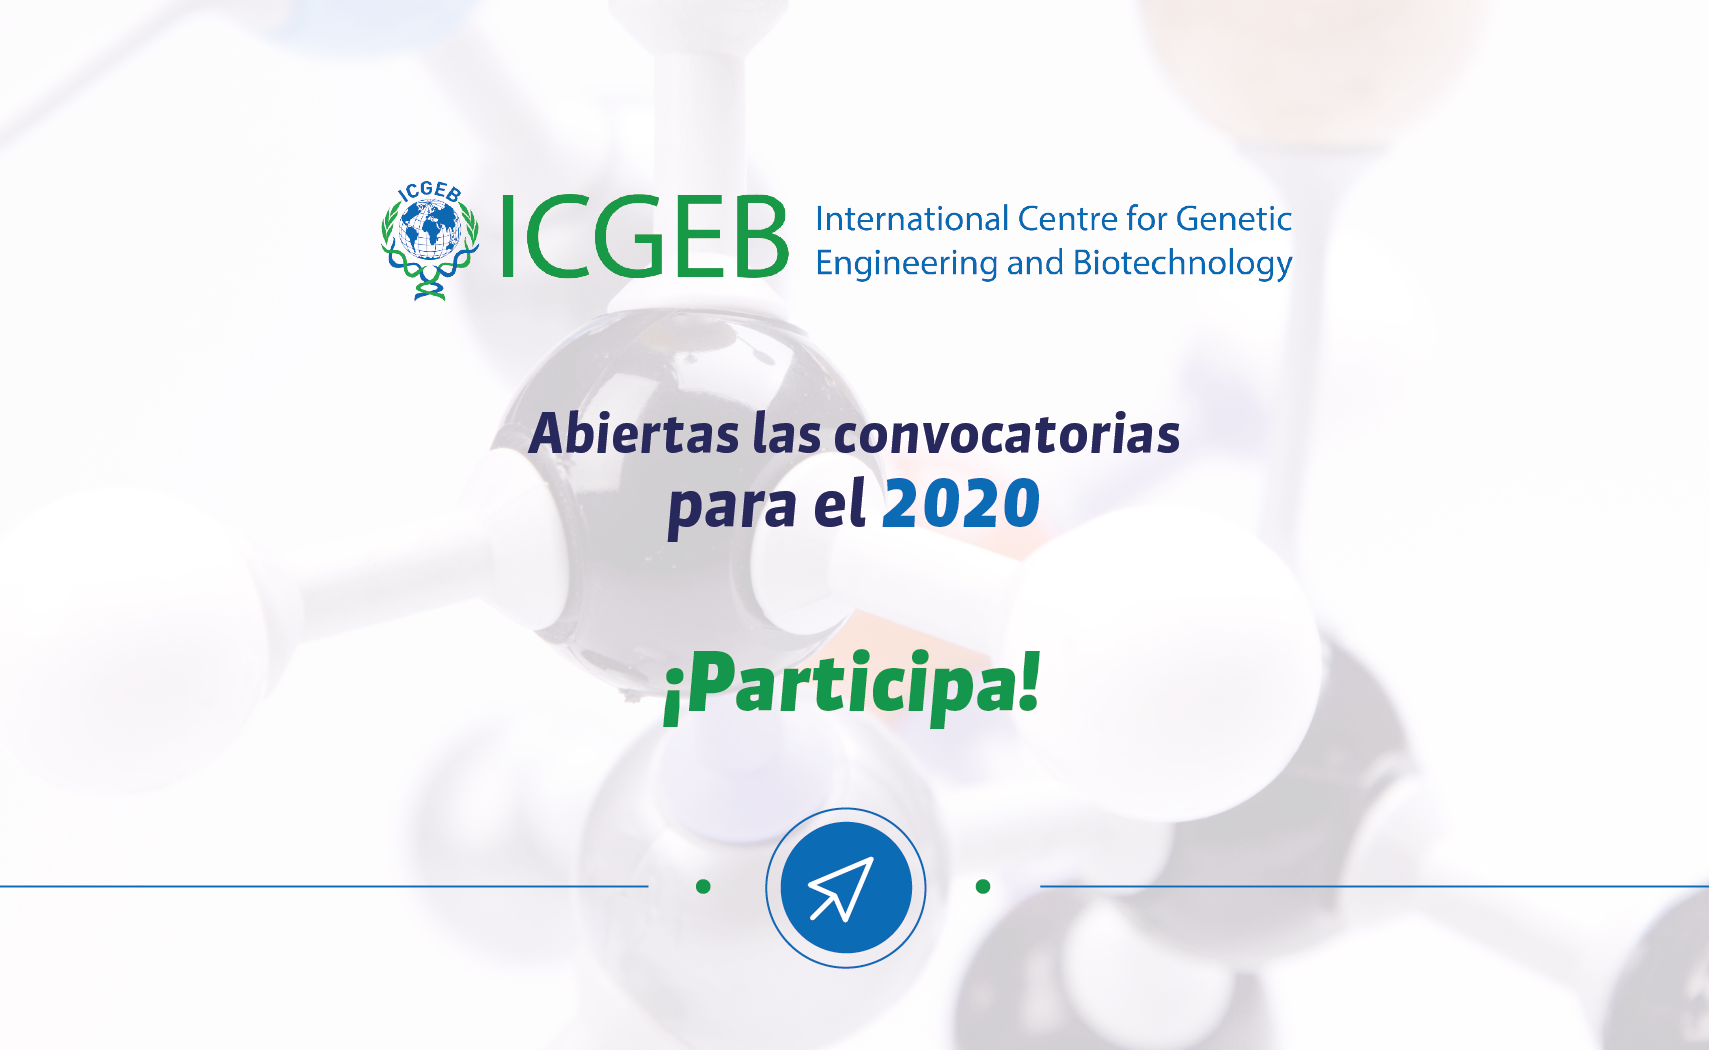 Conoce y participa en las convocatorias de ICGEB para el 2020